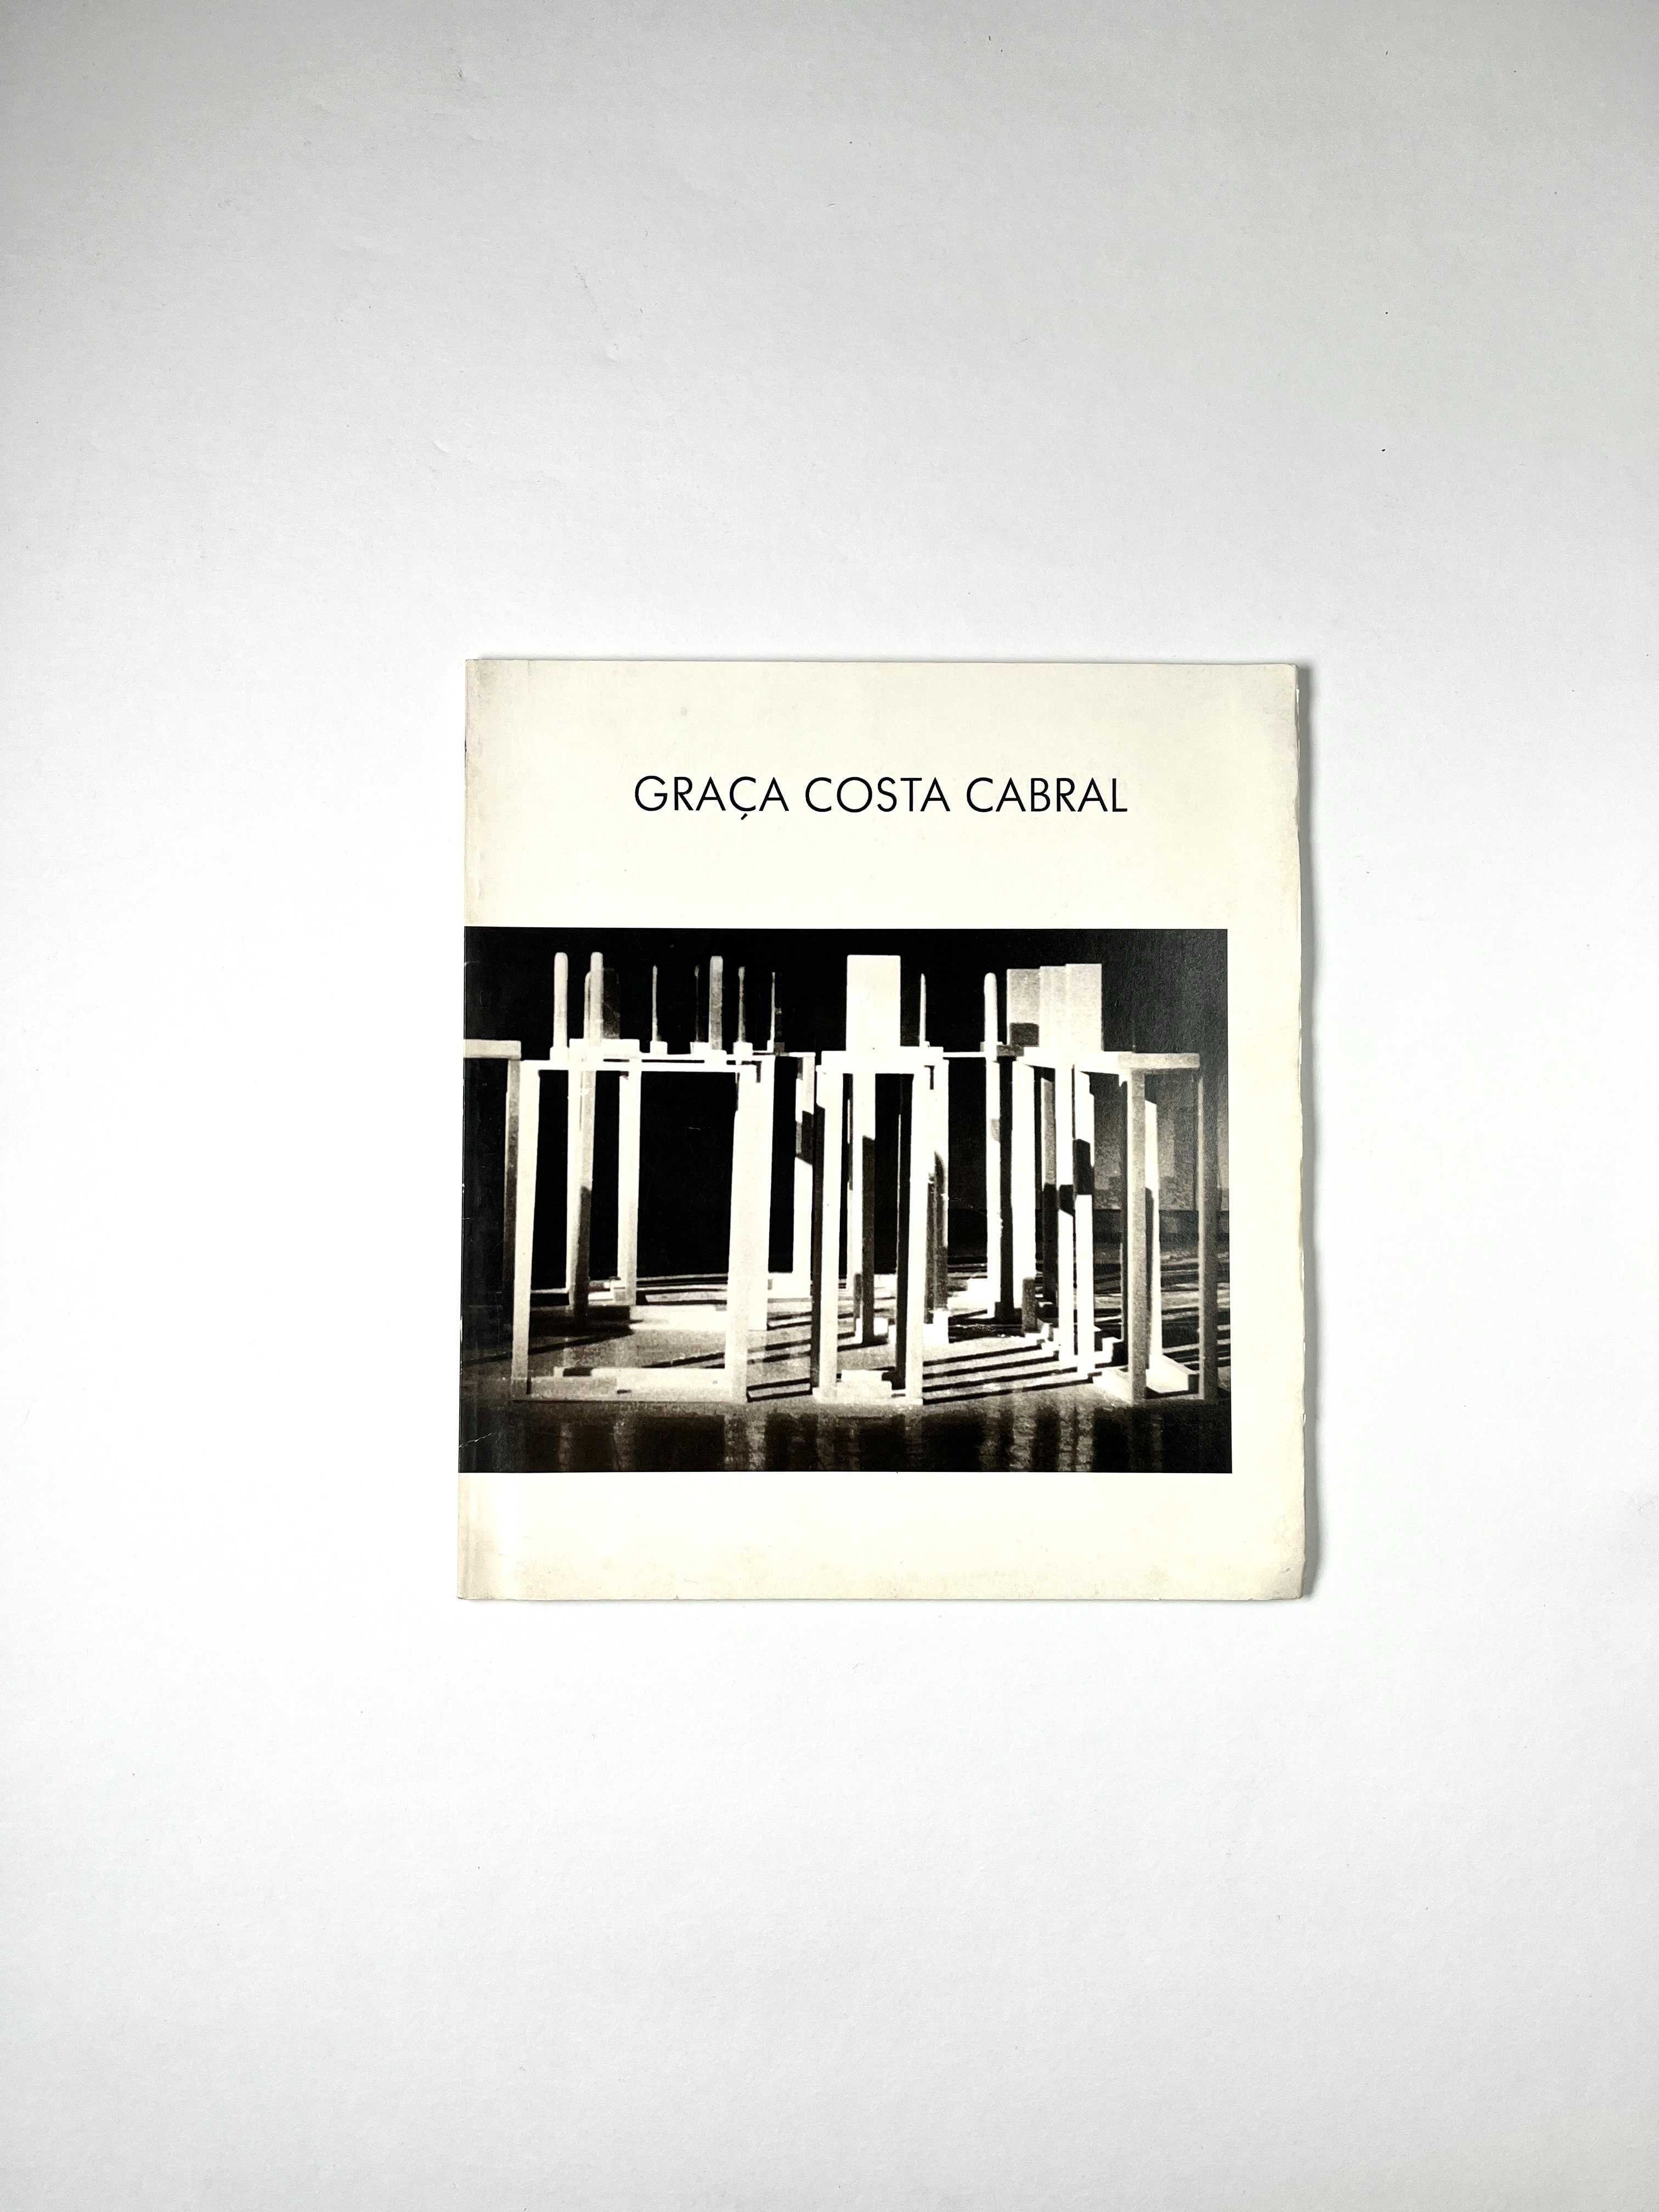 Catálogo Graça Costa Cabral - Escultura Galeria Monumental 1989